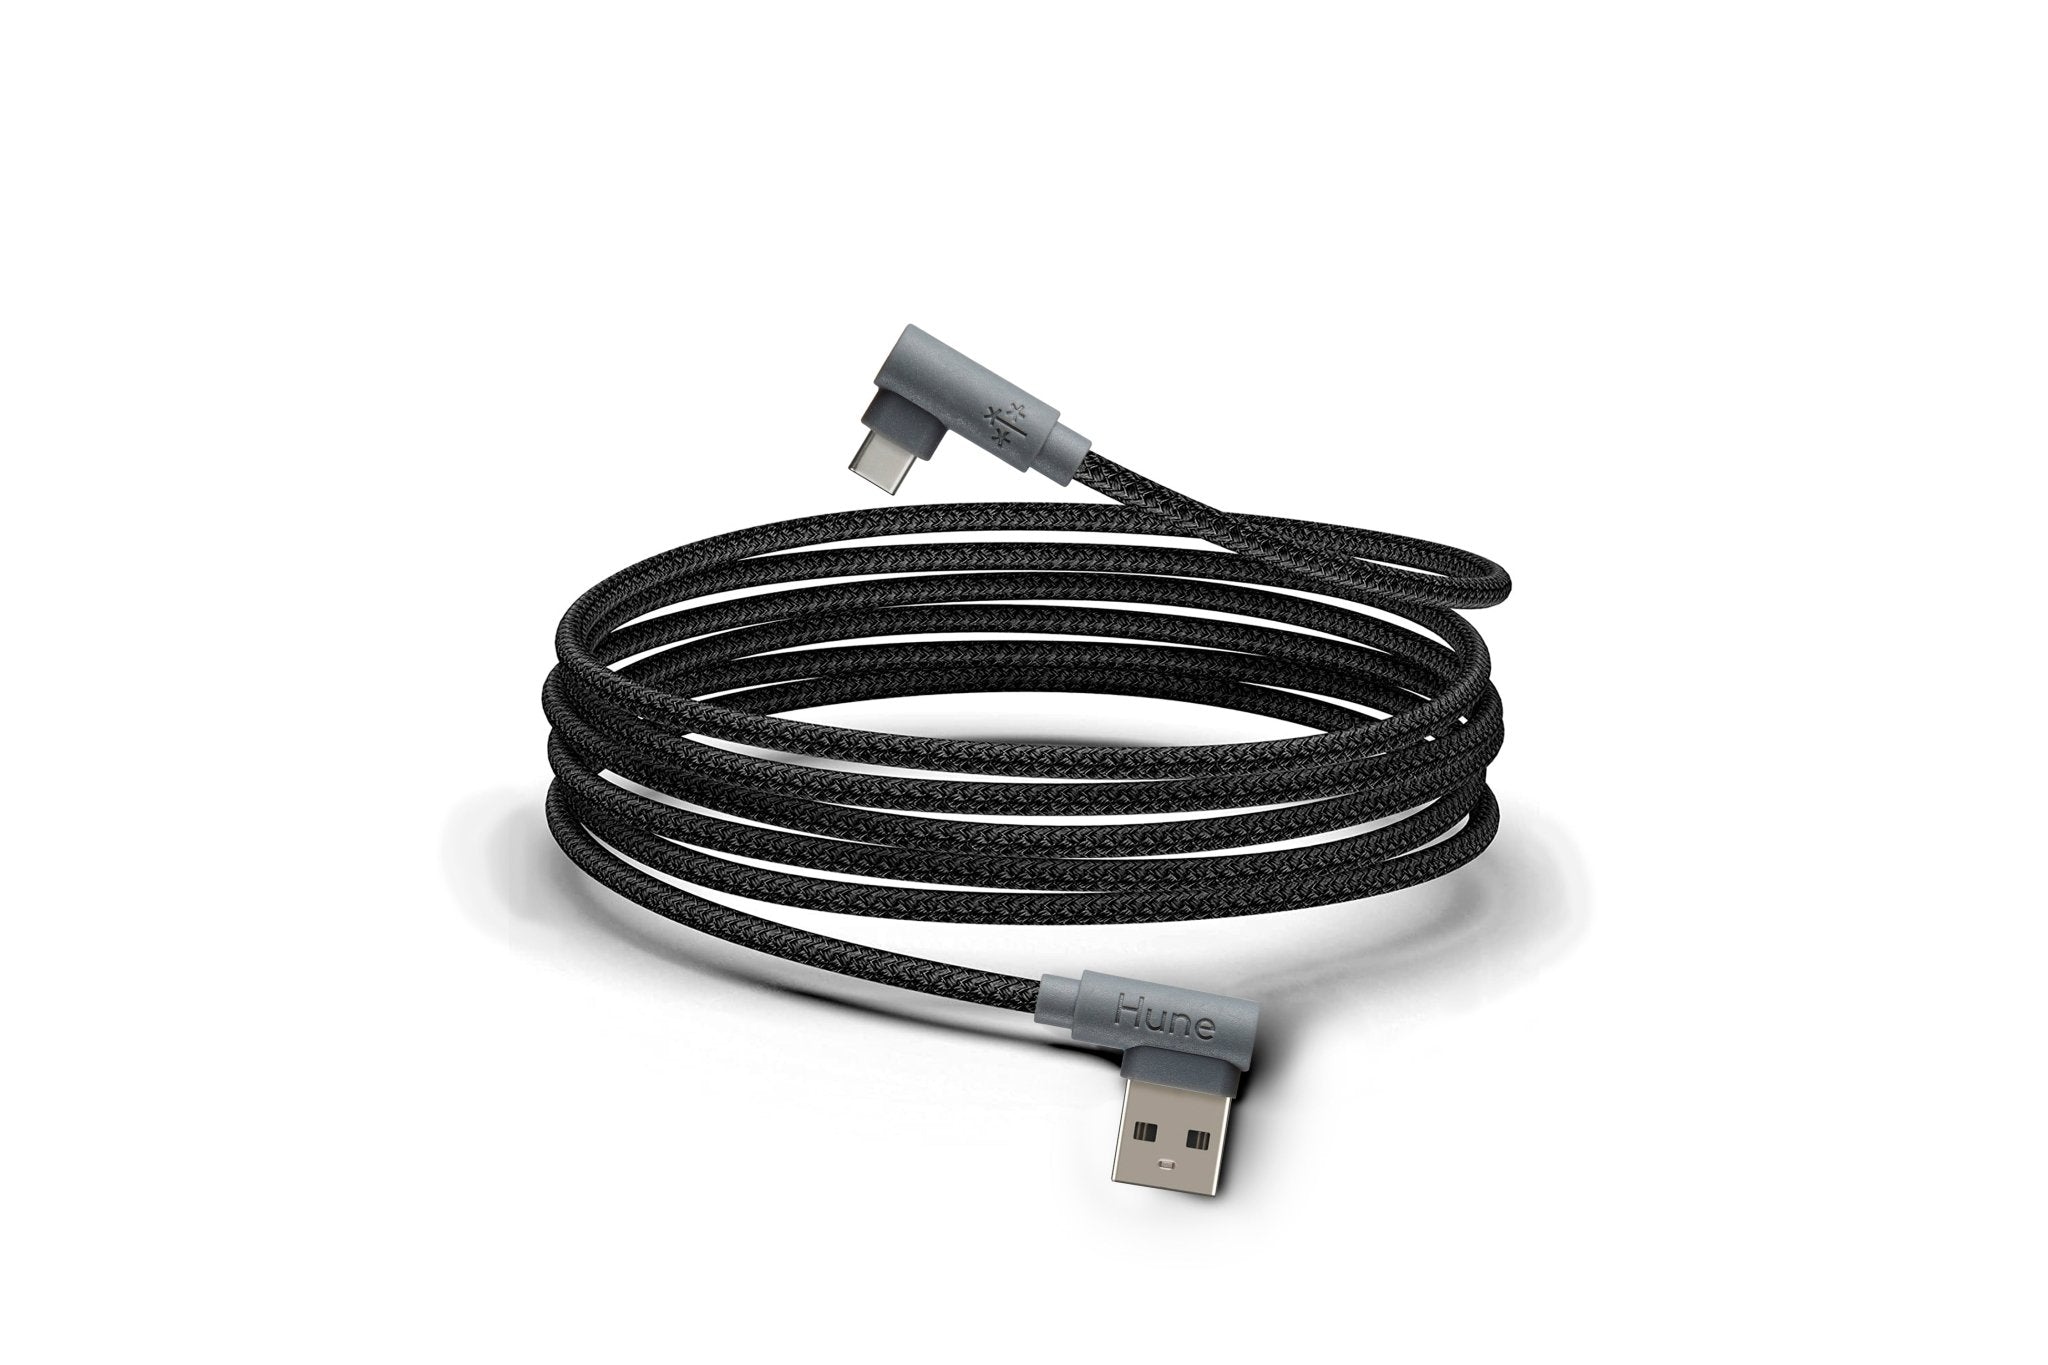 Cable USB A a Tipo C Carga Rápida 1.2m Sustentable –